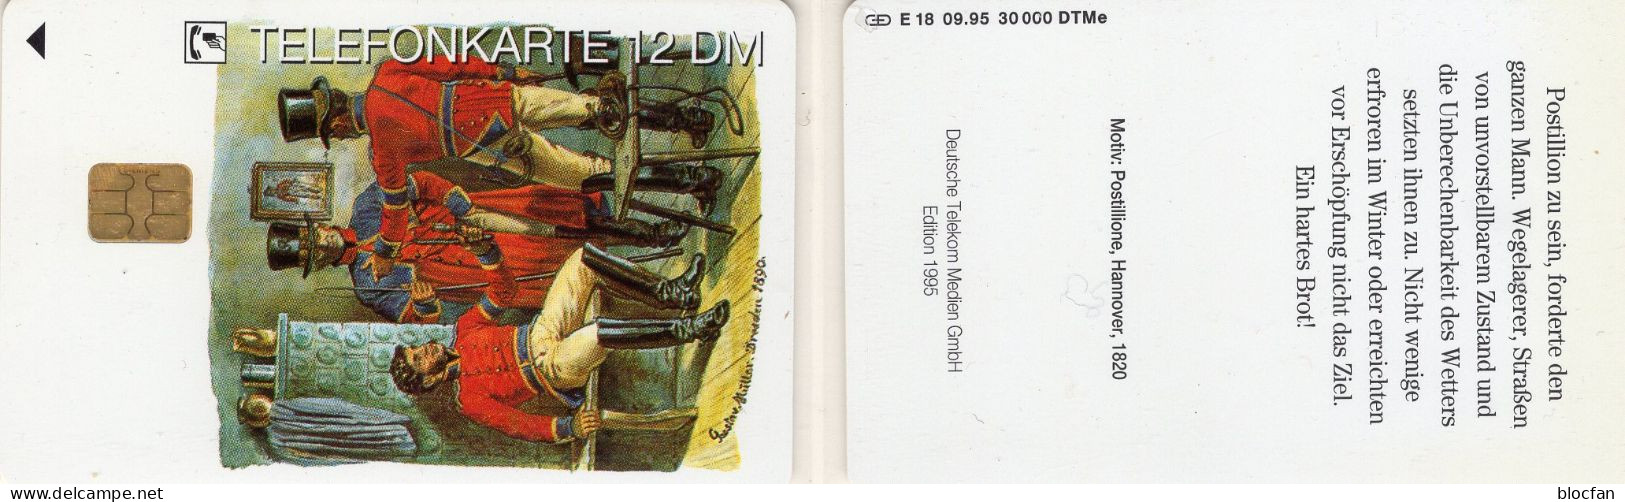 Postillion Hannover TK E18/1995 30.000 Expl.** 30€ Edition 5 Postillione Mit Postuniformen TC History Phonecard Germany - Cultura